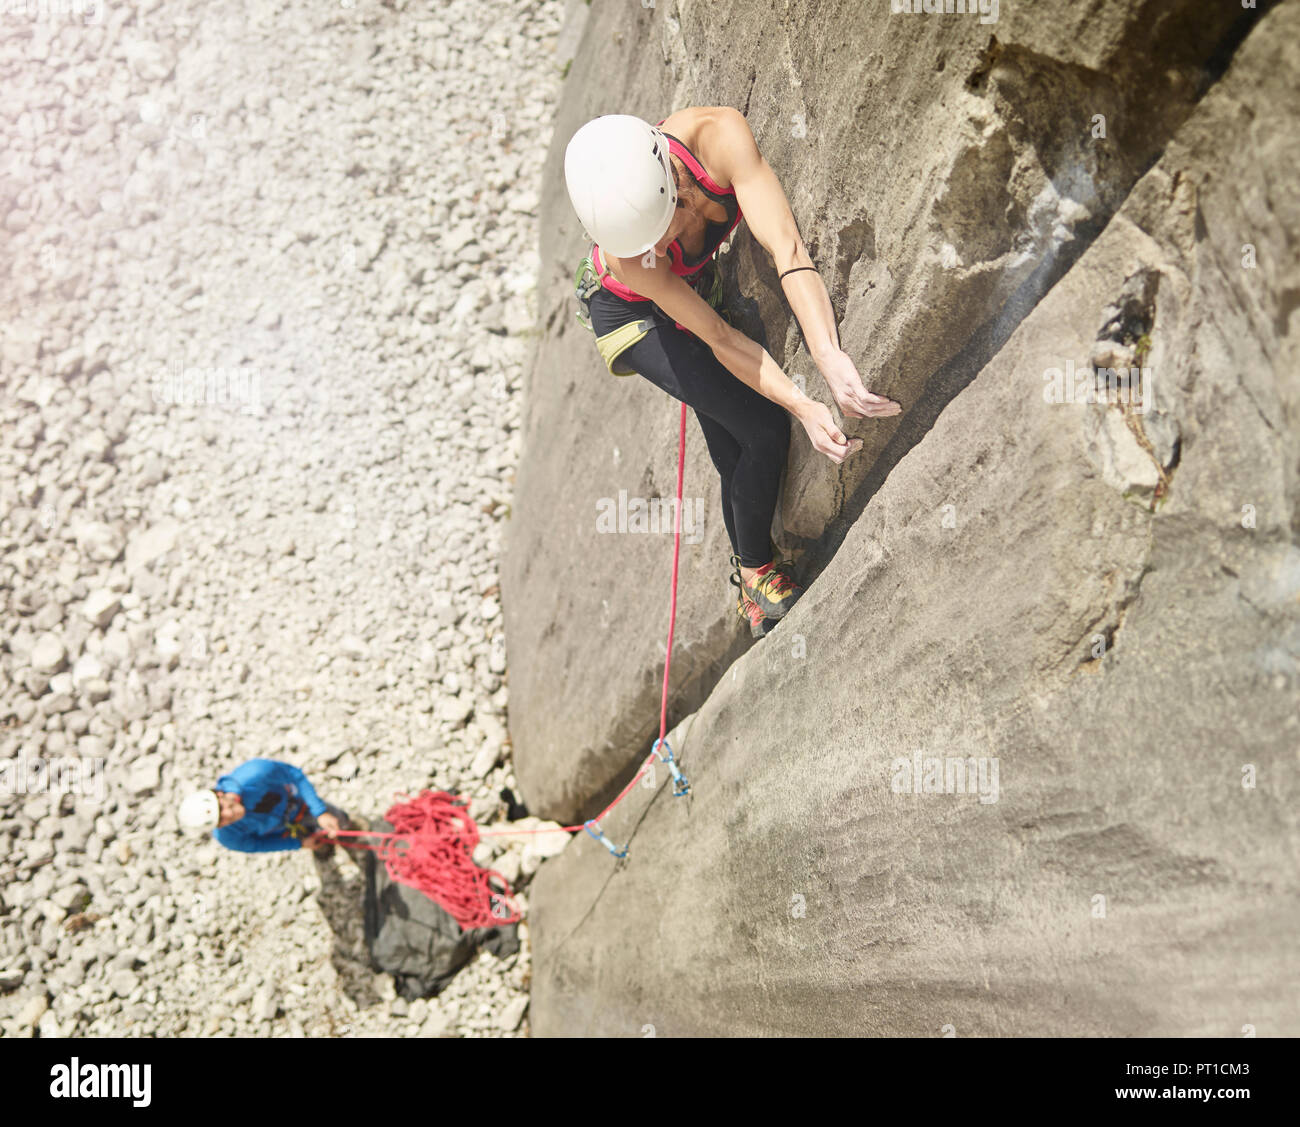 Austria, Innsbruck, Martinswand, woman climbing in rock wall Stock Photo